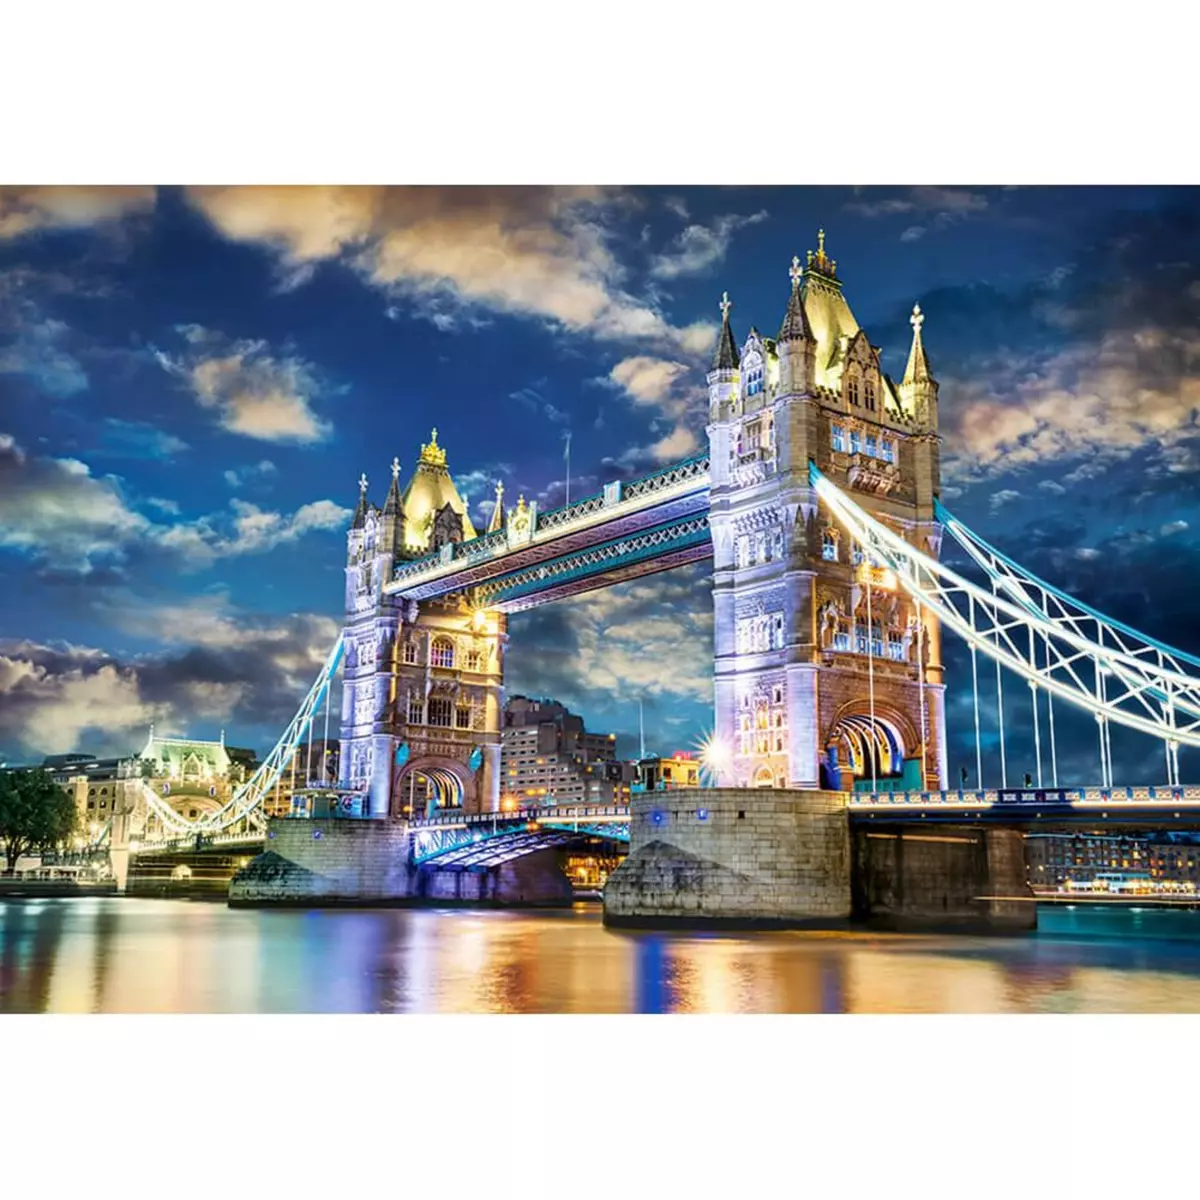 Castorland Puzzle 1500 pièces : Tower Bridge, Londres, Angleterre